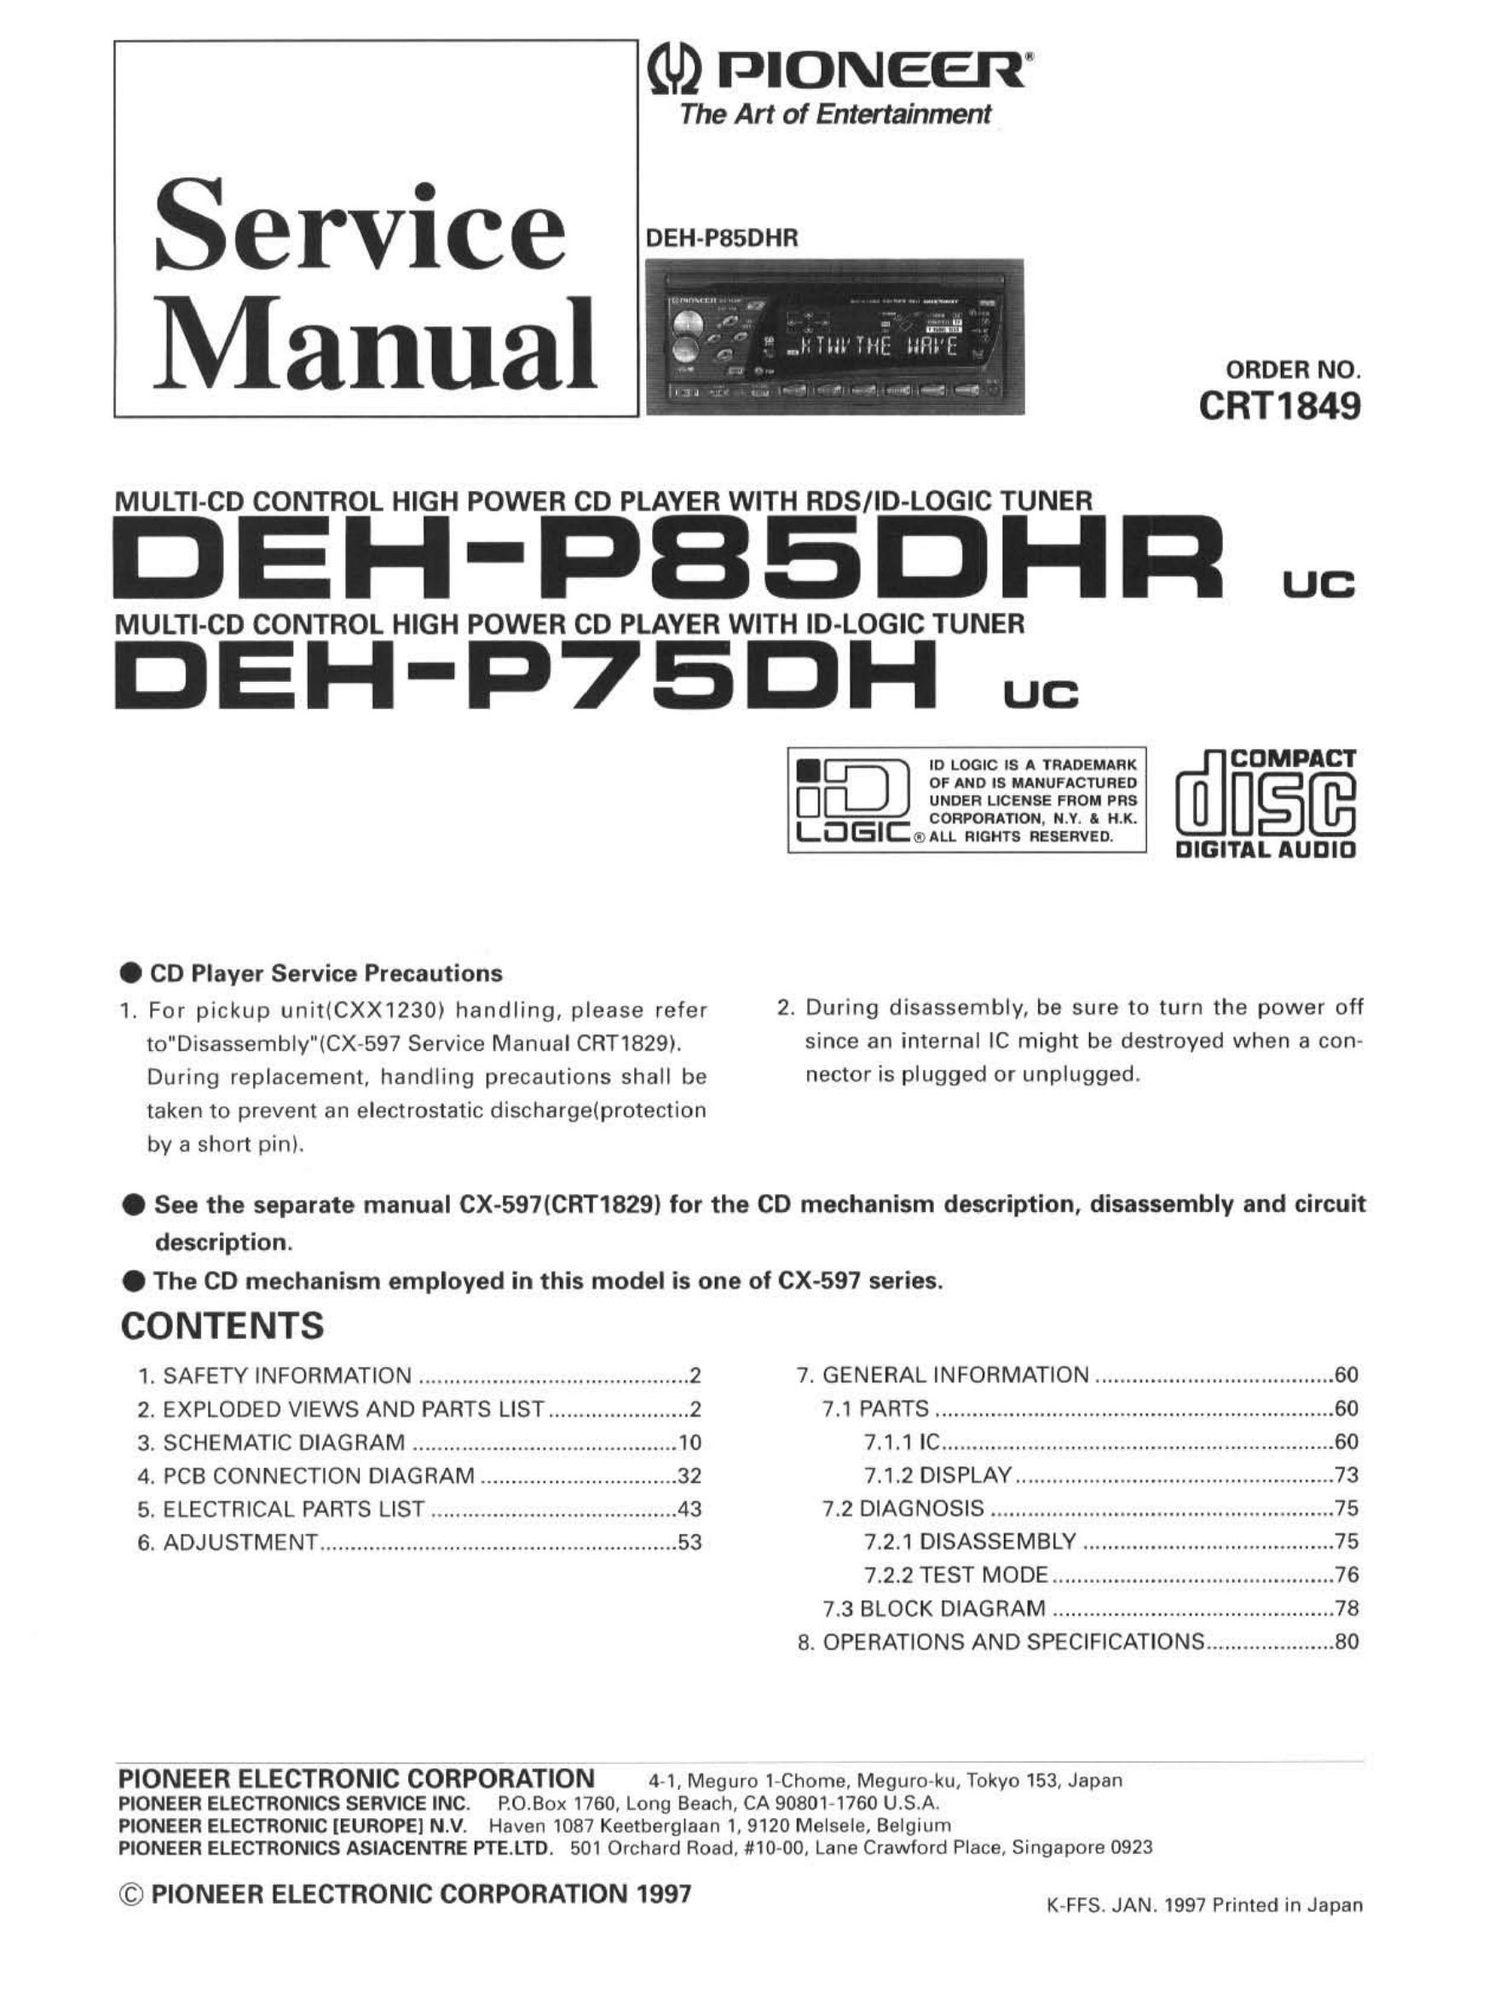 pioneer dehp 85 dhr service manual